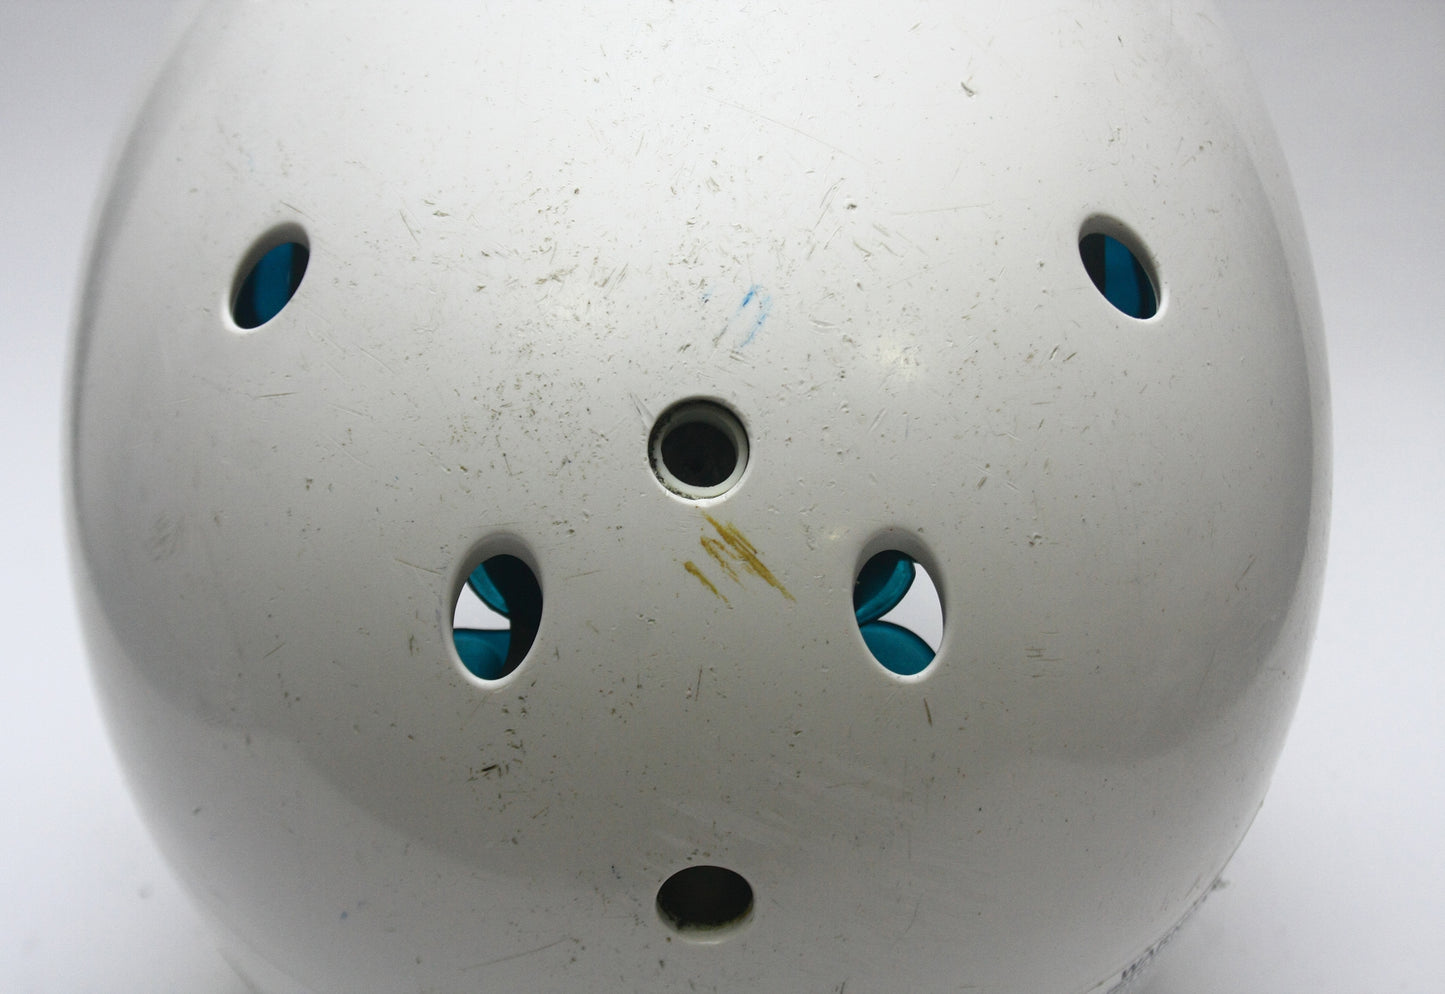 Game Used Schutt Air XP VDT Varsity Football Helmet- Size Medium